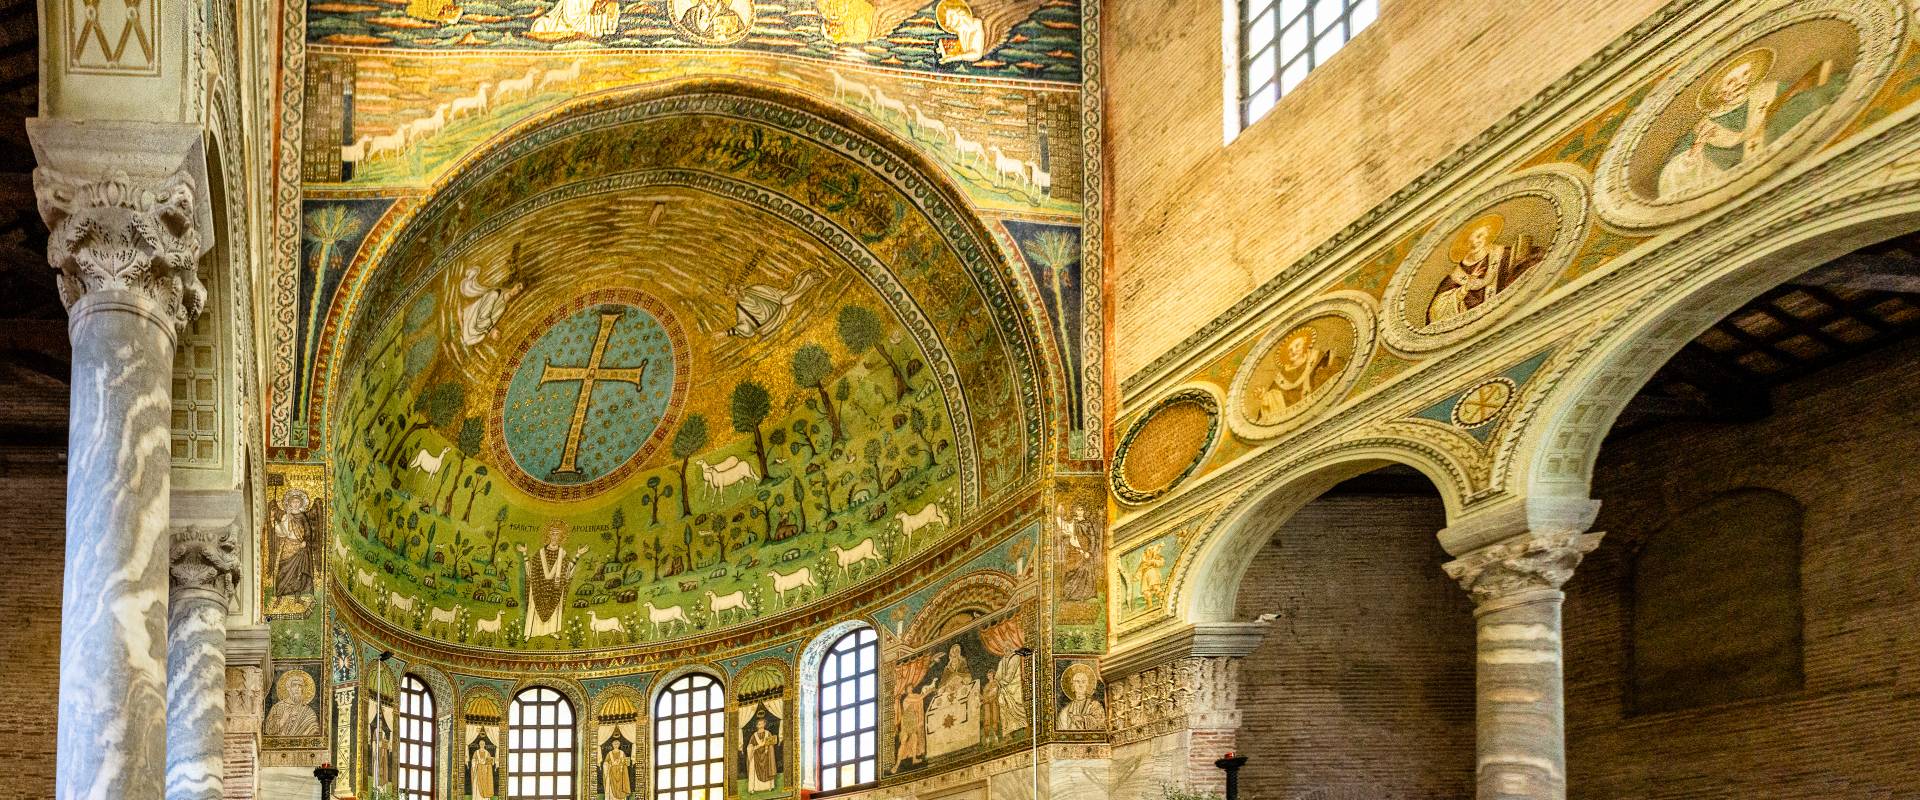 A001001 Basilica di Sant'Apollinare in Classe - Ravenna - photo by Vanni Lazzari